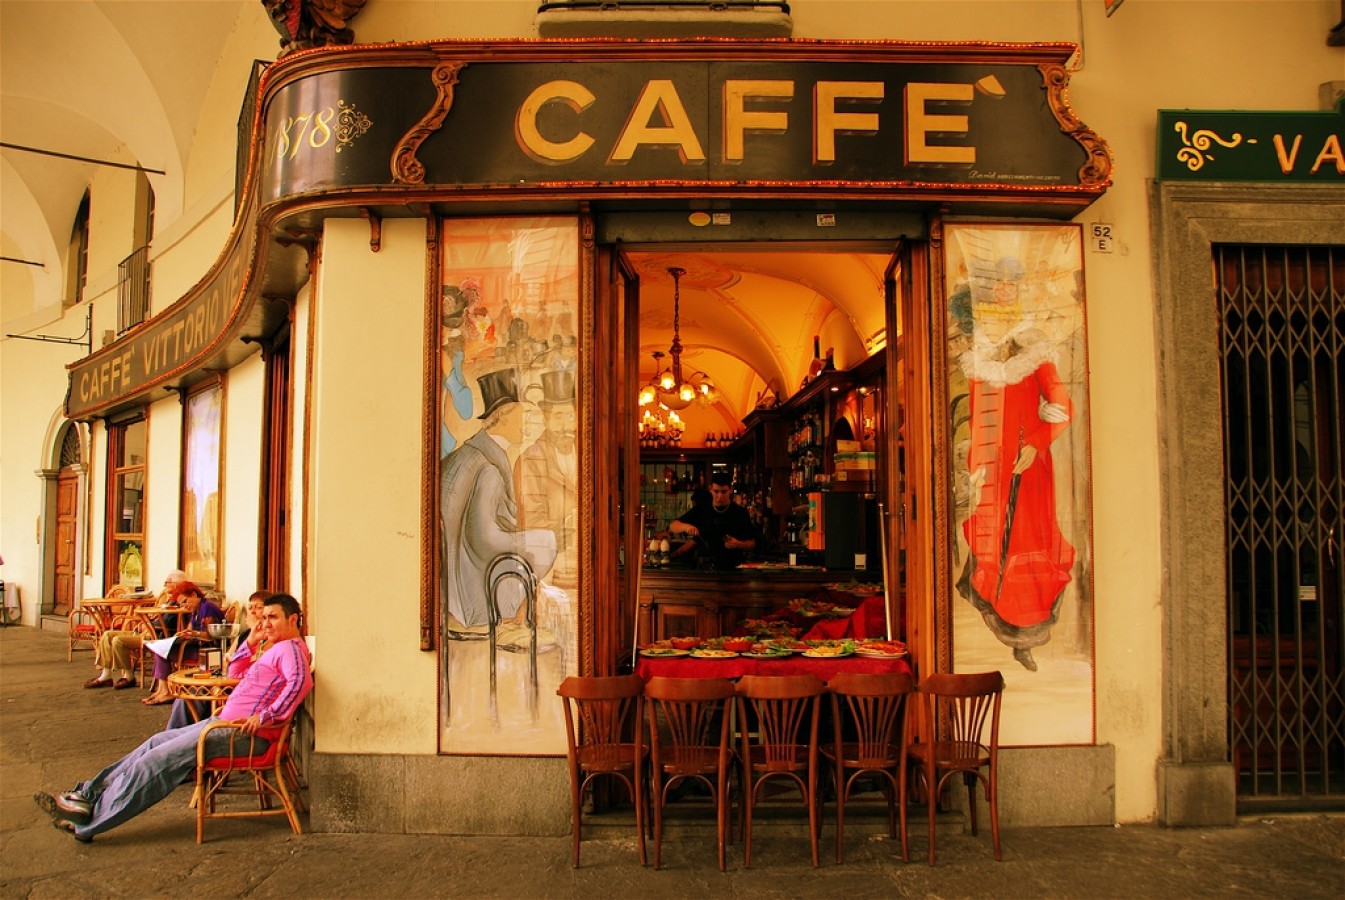 Olaszország, a koffeinfüggők paradicsoma